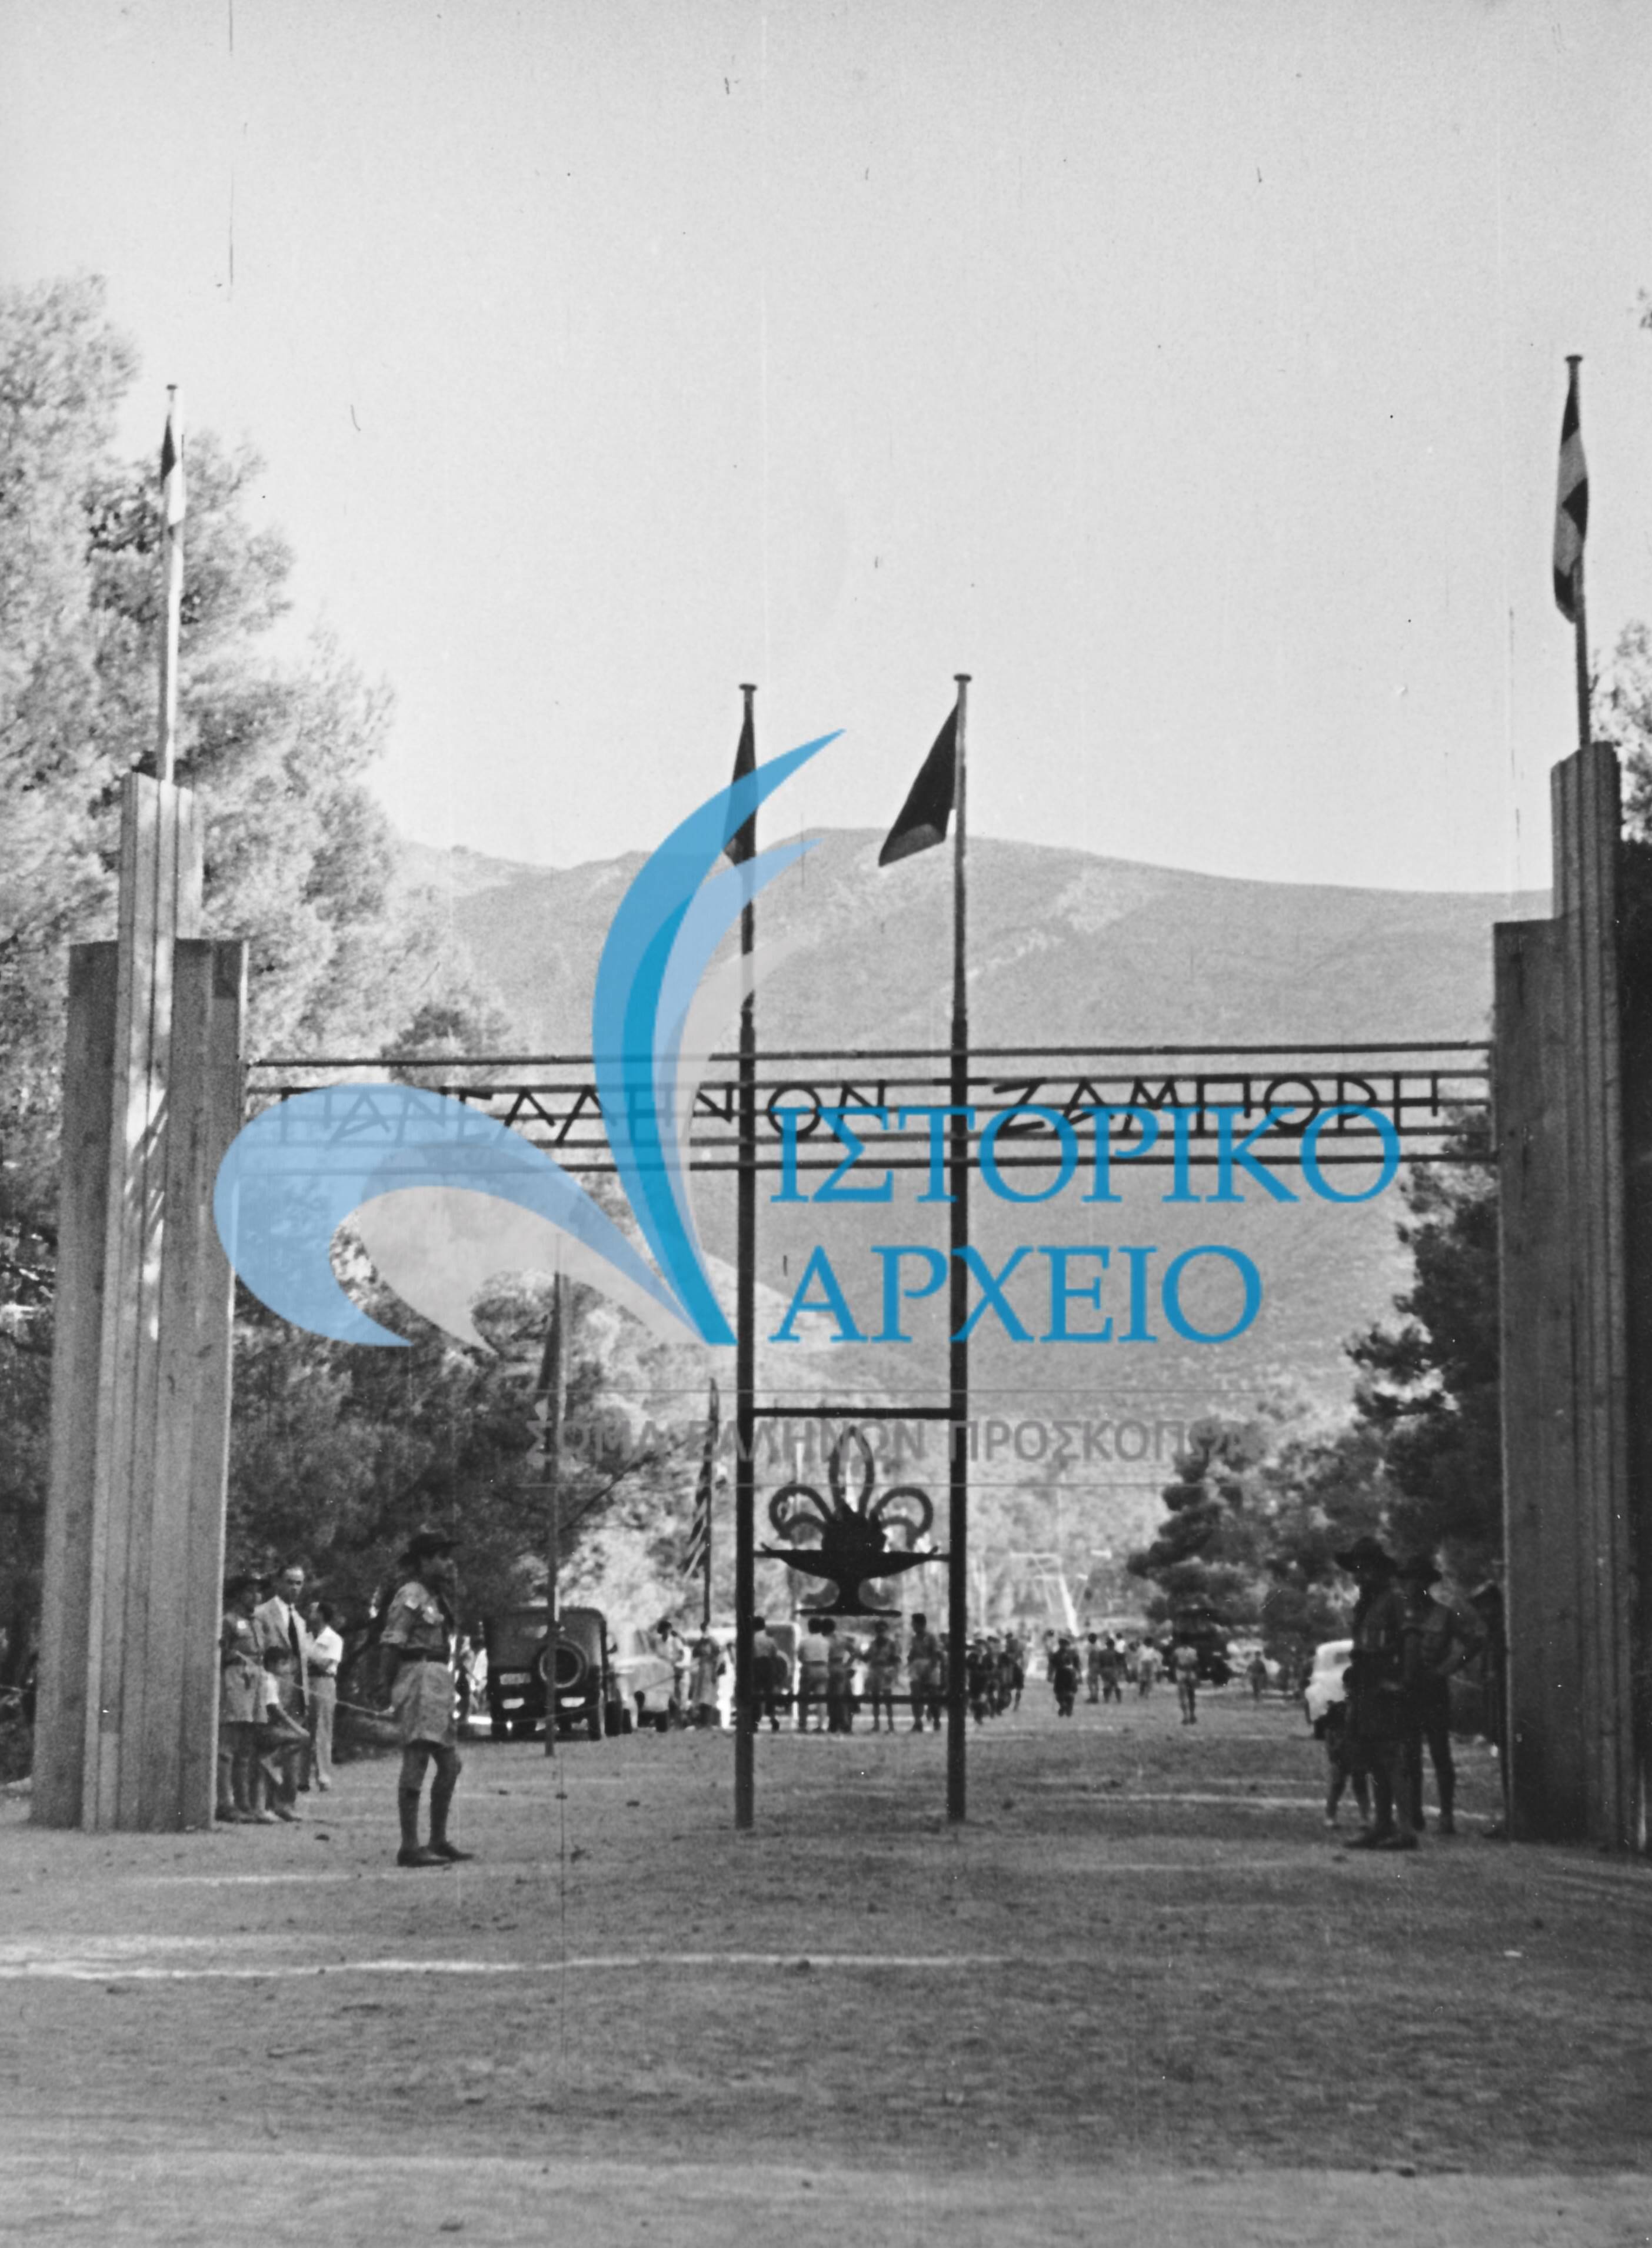 Περιέχει φωτογραφίες από το 1ο Πανελλήνιο Προσκοπικό Τζάμπορη που έγινε για τον εορτασμό των 40 χρόνων του Σώματος Ελλήνων Προσκόπων στο Διόνυσο Αττικής το 1950.